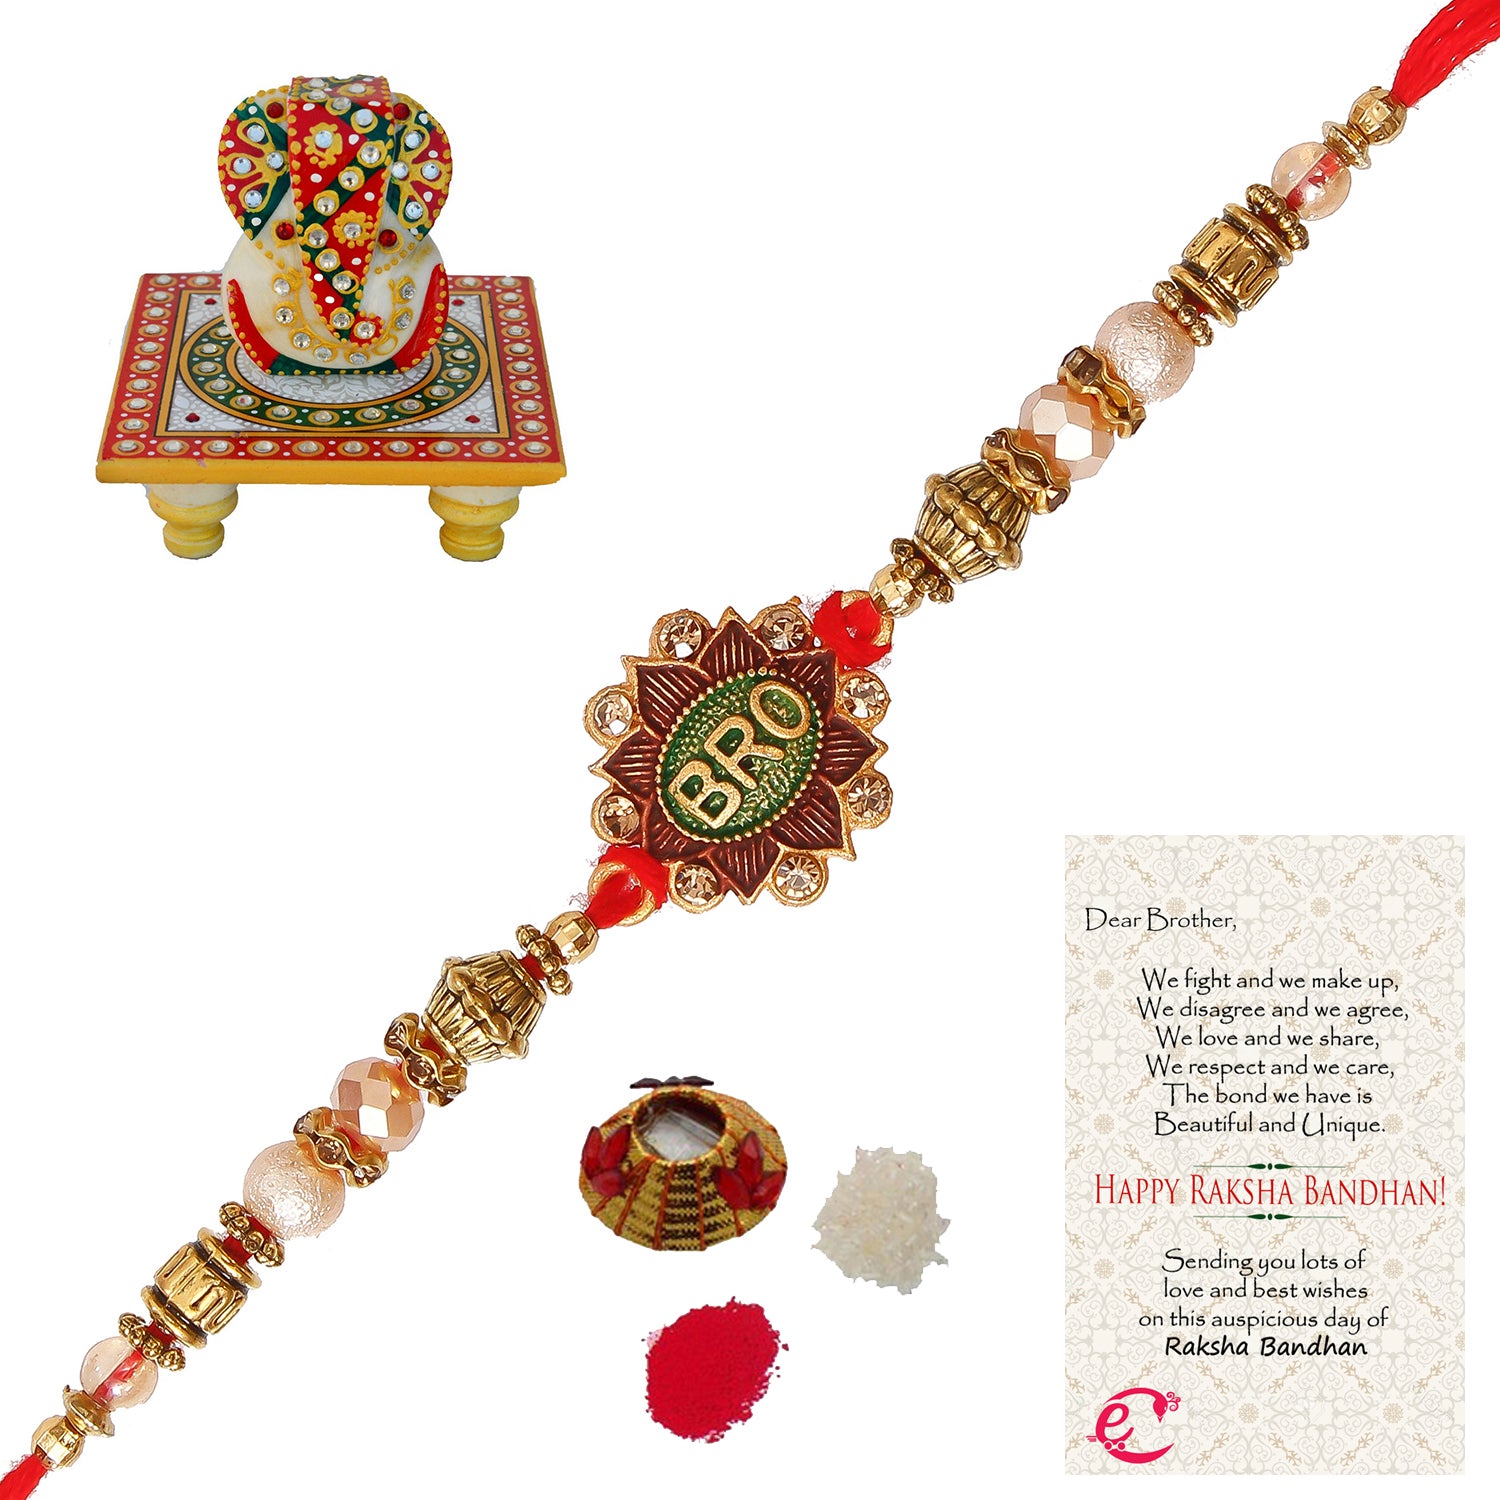 Designer Rakhi with Lord Ganesha on Kundan Studded Marble Chowki and Roli Tikka Matki, Best Wishes Greeting Card